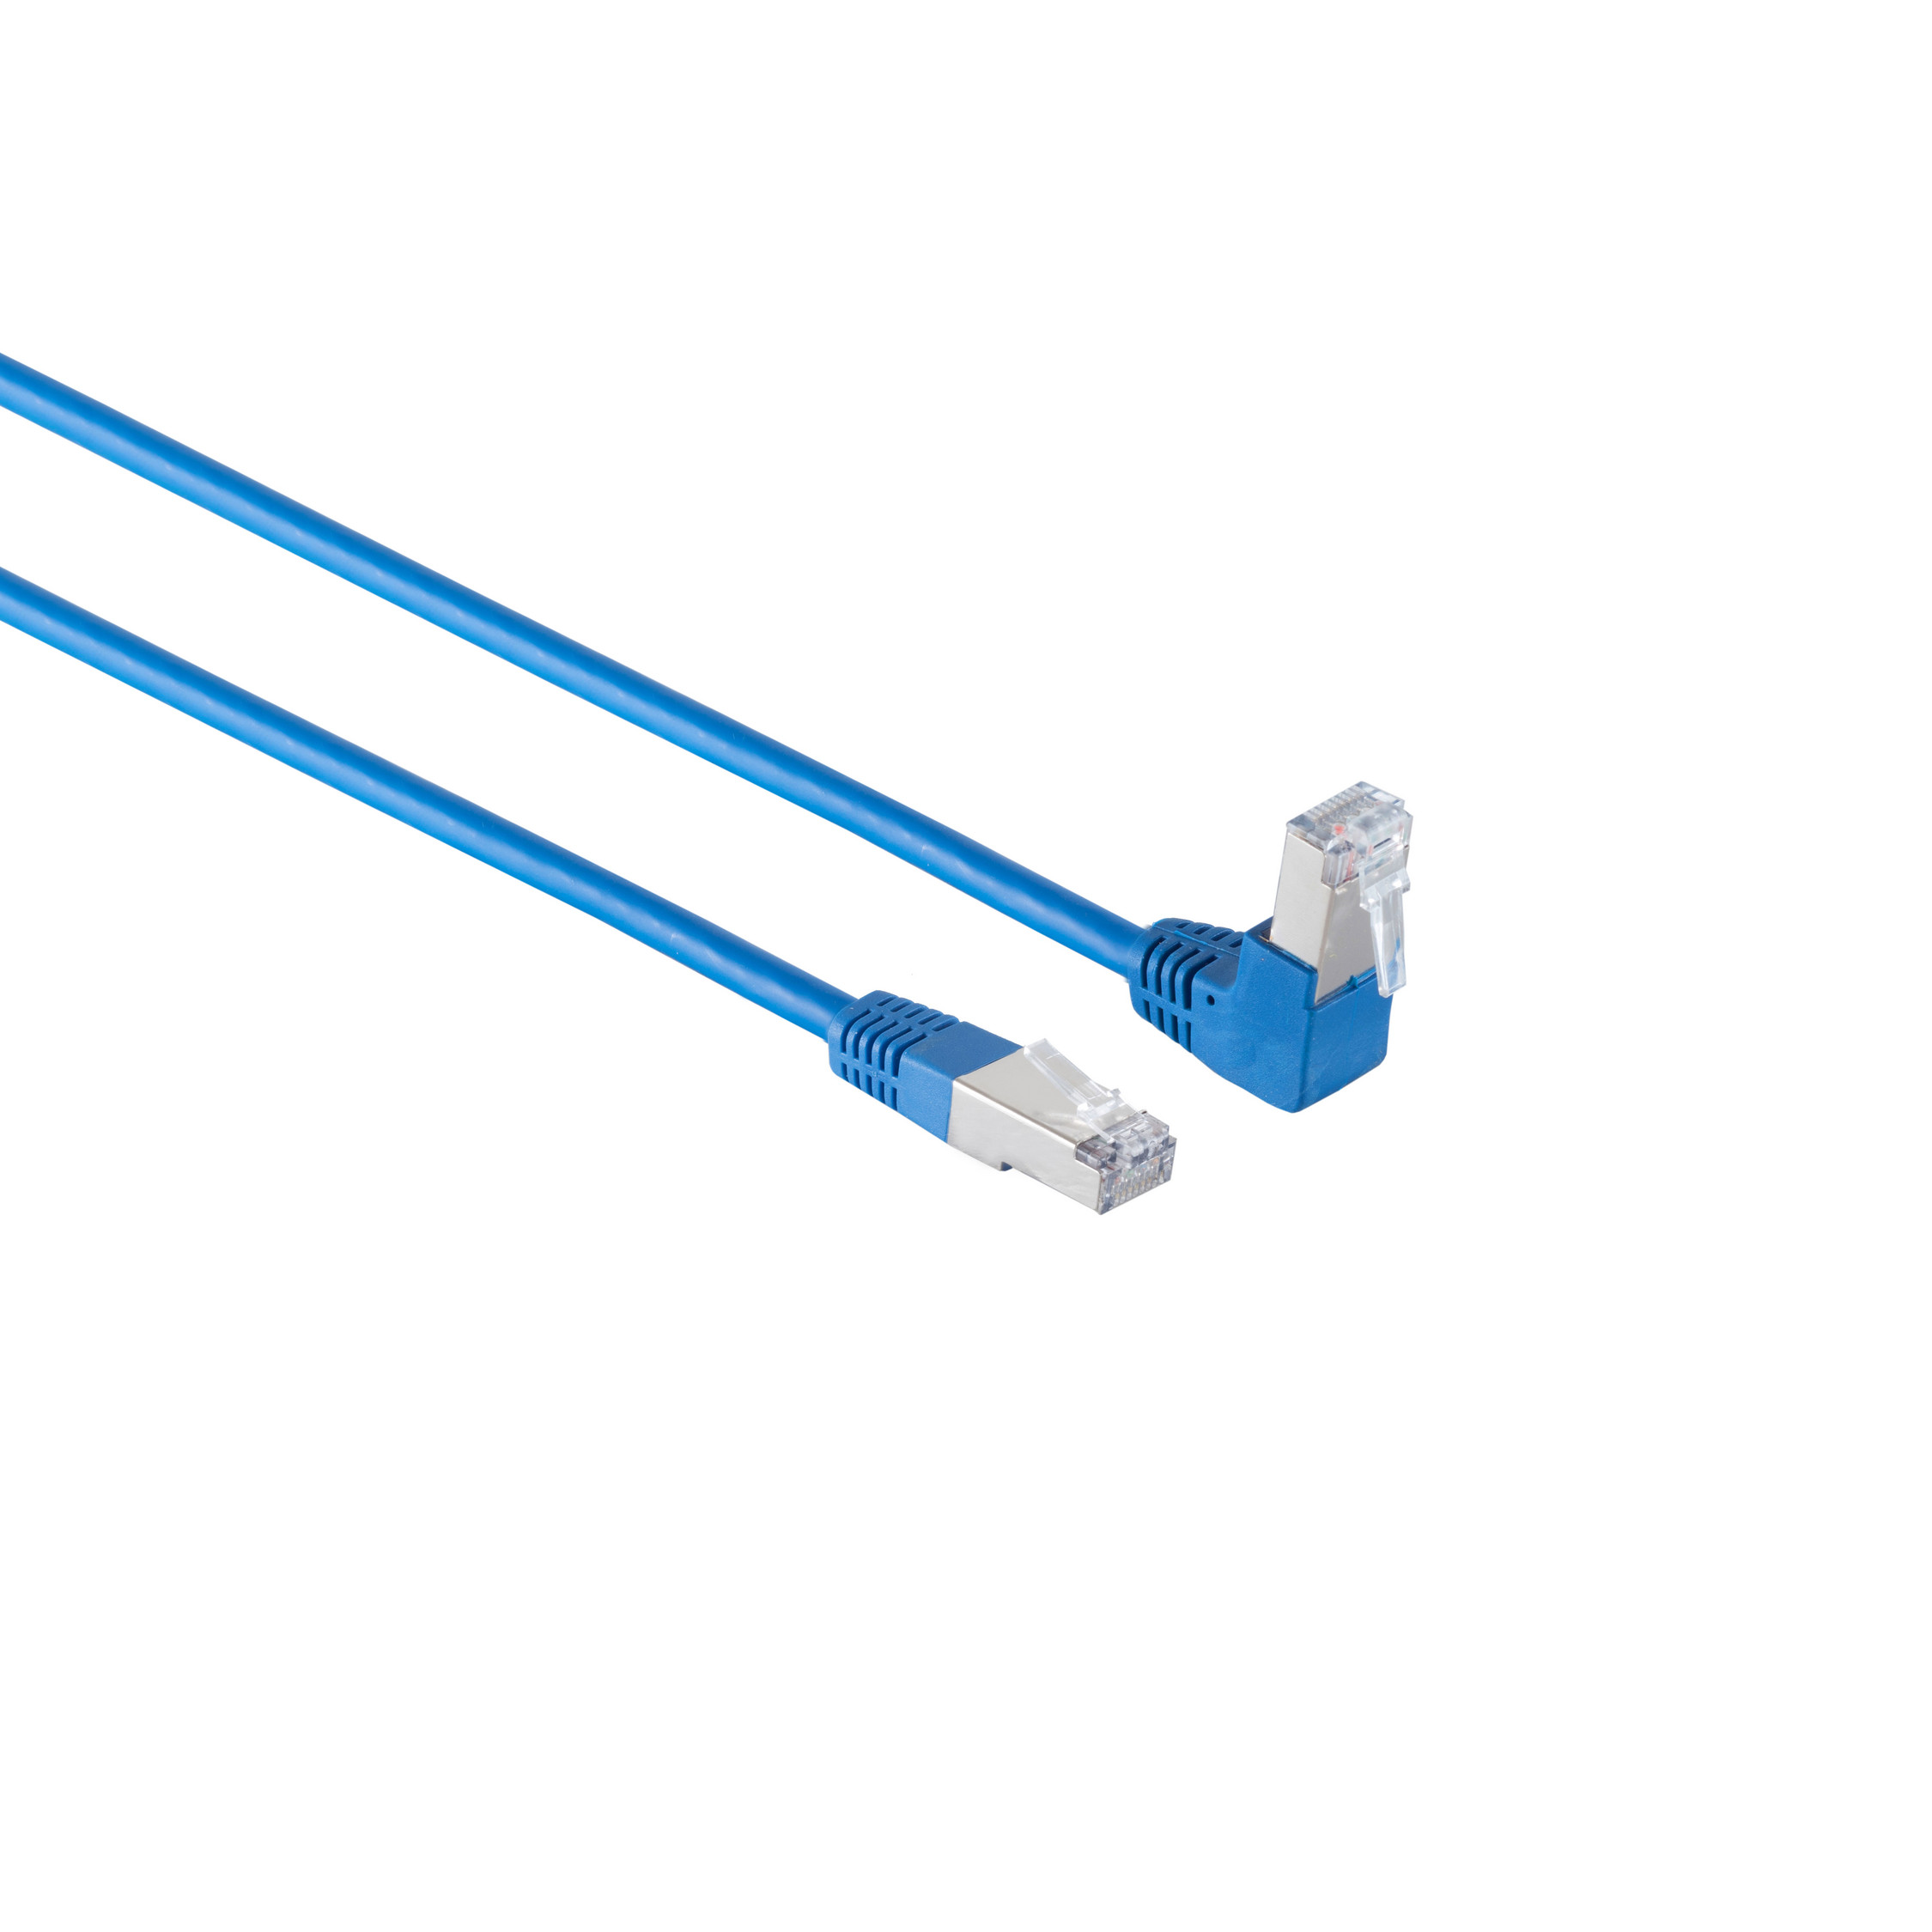 KABELBUDE Kabel cat 6 S/FTP m blau Winkel-gerade 0,25 RJ45, 0,25m, PIMF Patchkabel